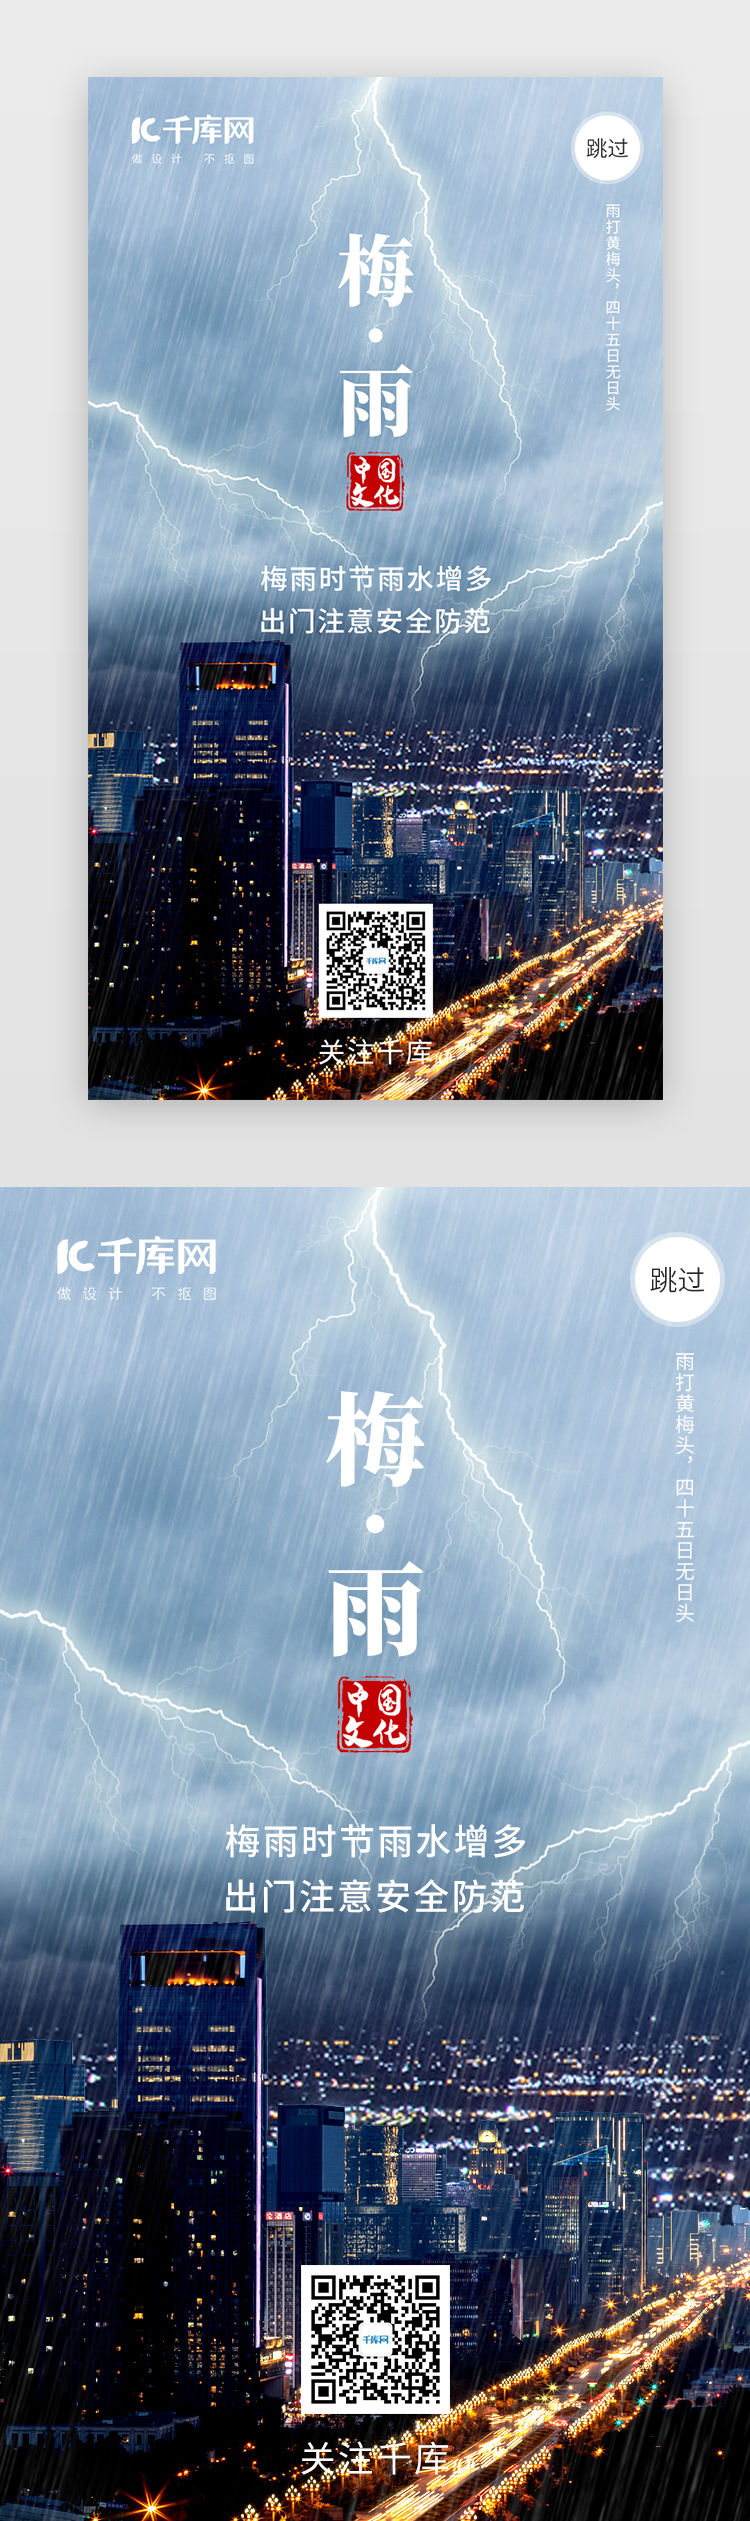 梅雨季节闪屏引导页图片